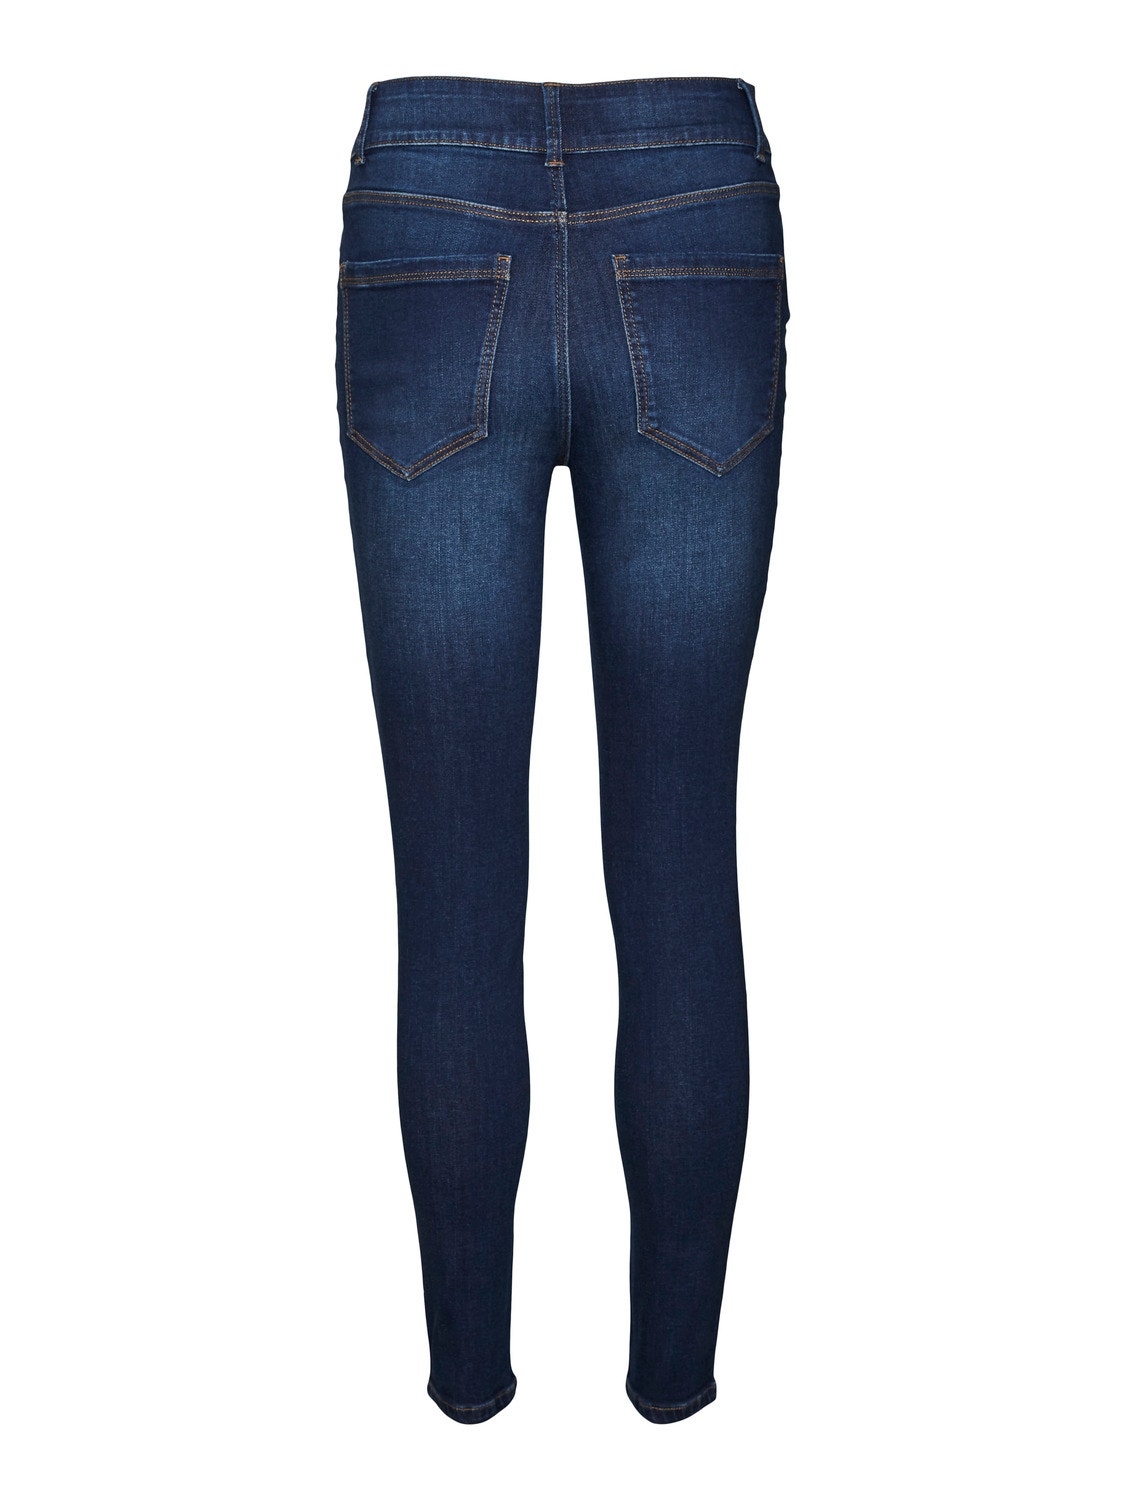 Vero Moda VMSOPHIA Skinny Fit Jeans -Dark Blue Denim - 10289737